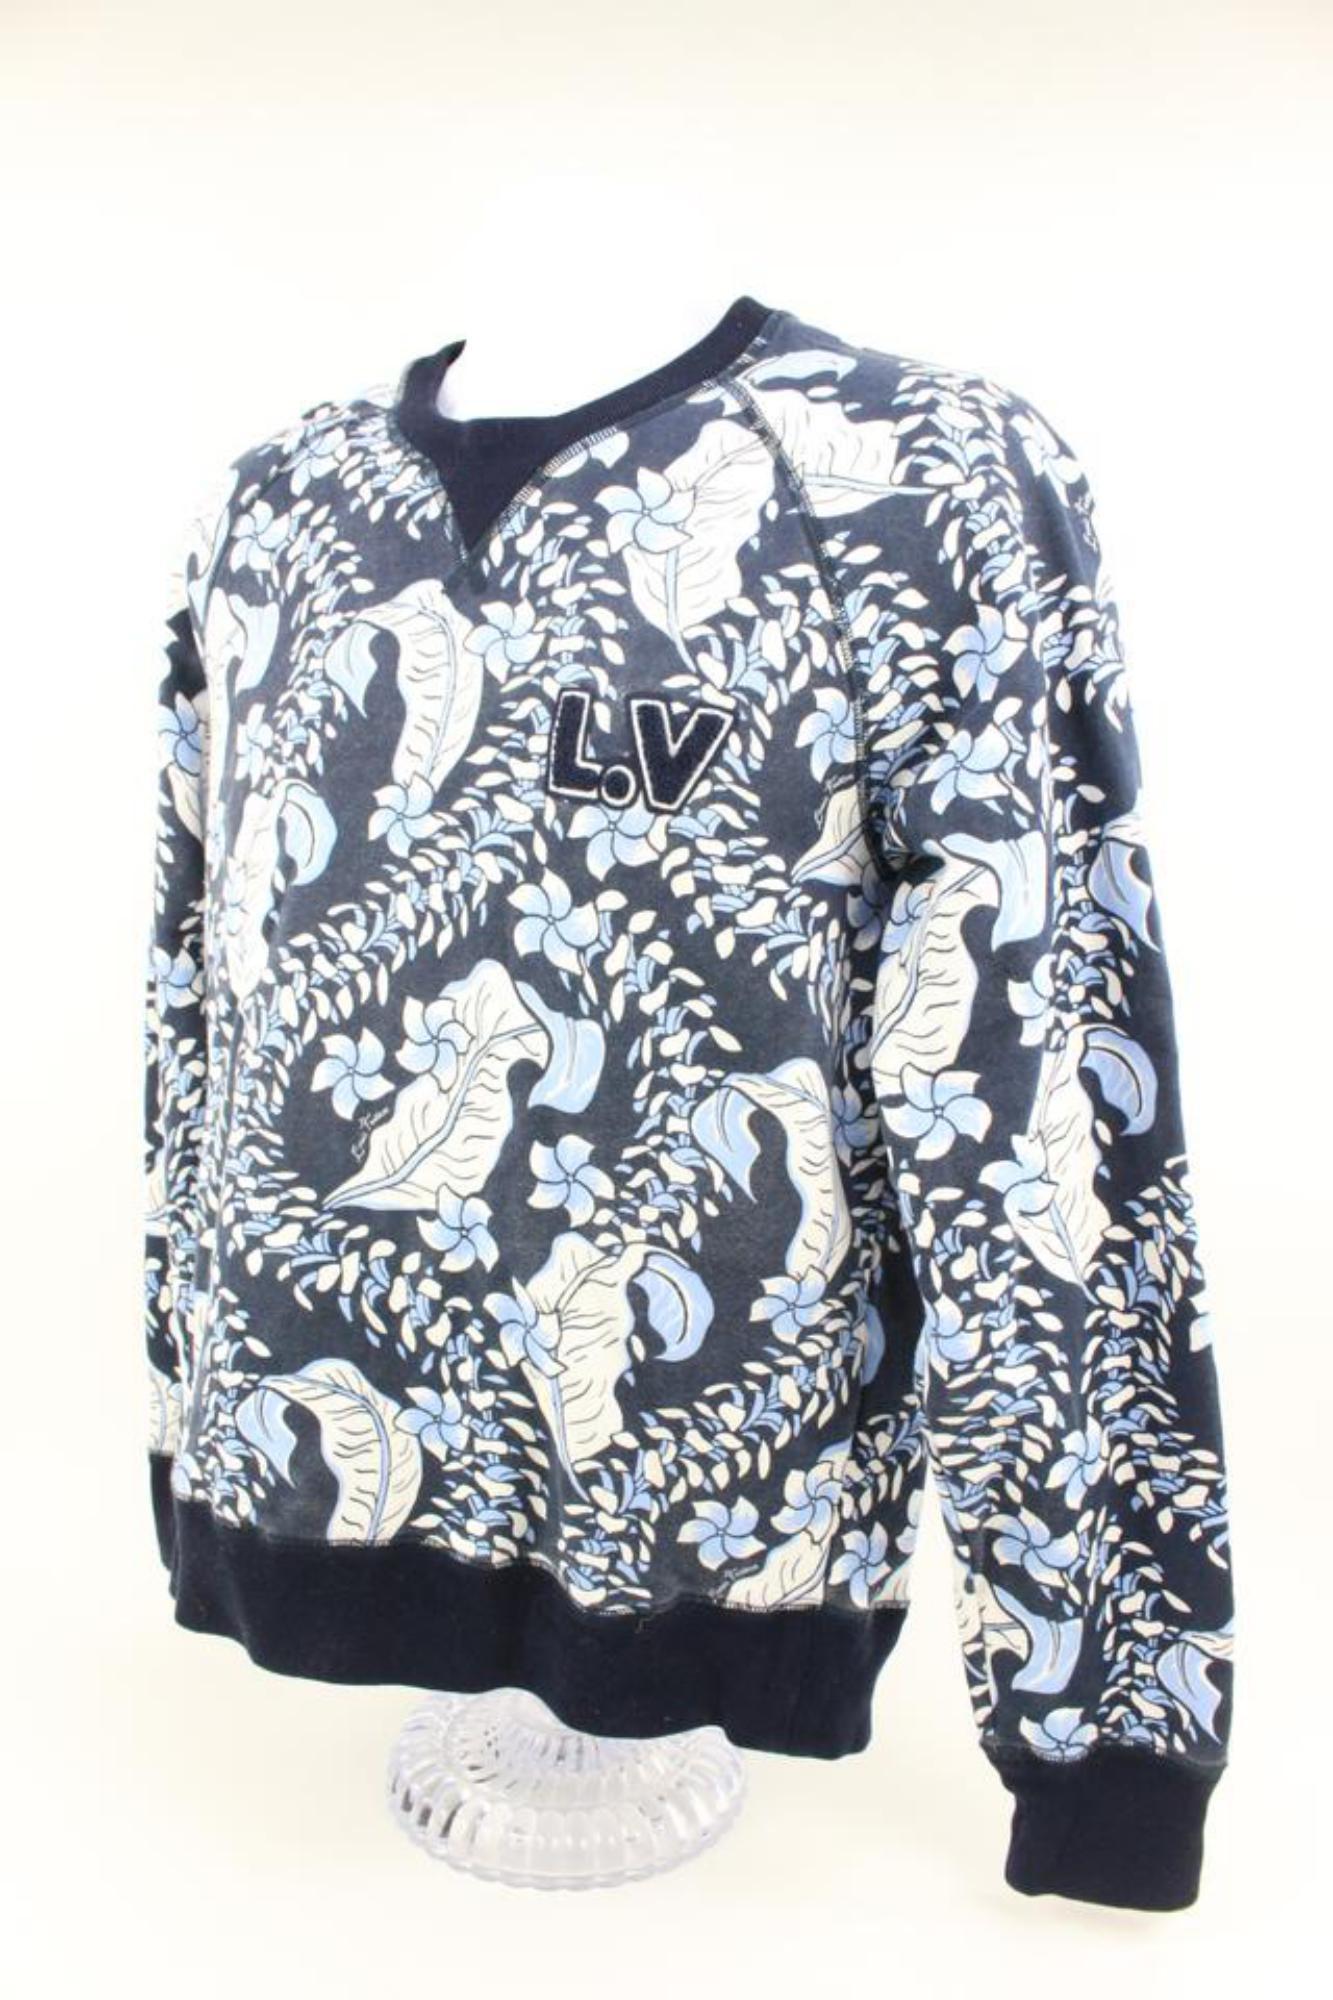 Louis Vuitton - Sweat-shirt à fleurs imprimé feuilles sur toute la surface, taille XL LV, état neuf avec étiquettes, 2LV415B
Numéro de date/numéro de série : CA36929
Fabriqué en : Italie
Mesures : Longueur :  Largeur de 22